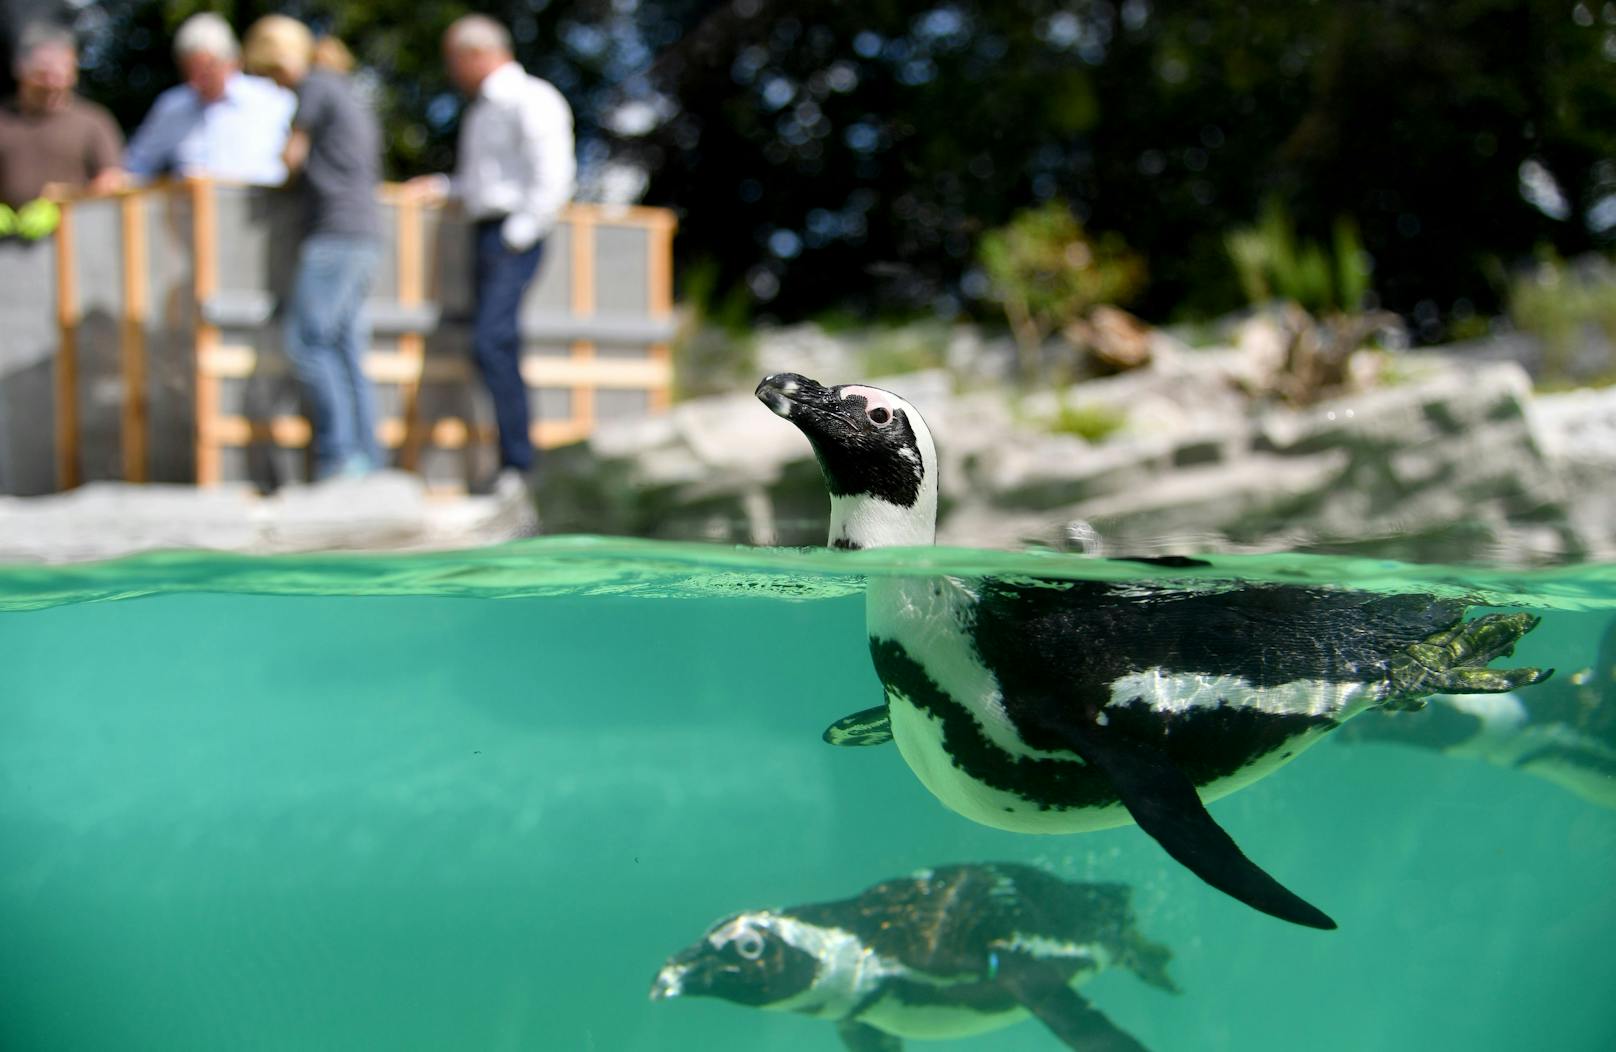 Von einem Pinguin-Jungvogel aus dem Zoo Salzburg fehlte vier Tage lang jede Spur – offenbar wurde das Tier gestohlen. Die Ermittlungen laufen.